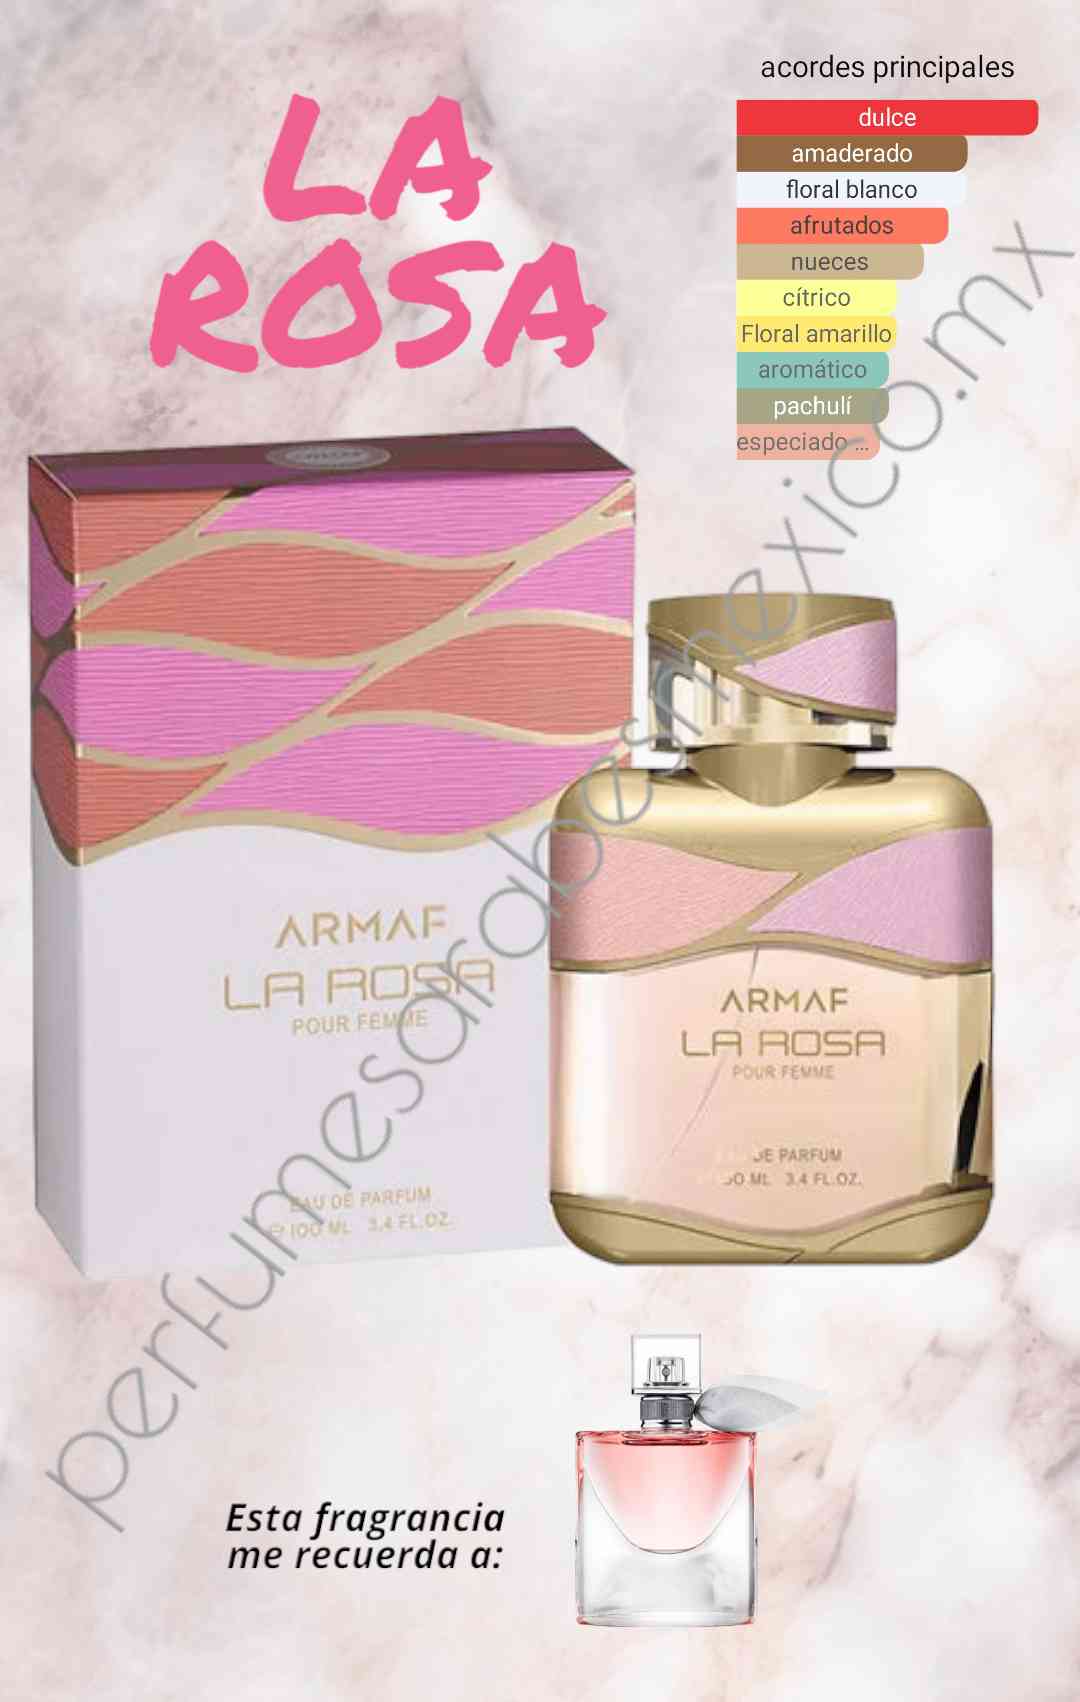 La rosa by ARMAF